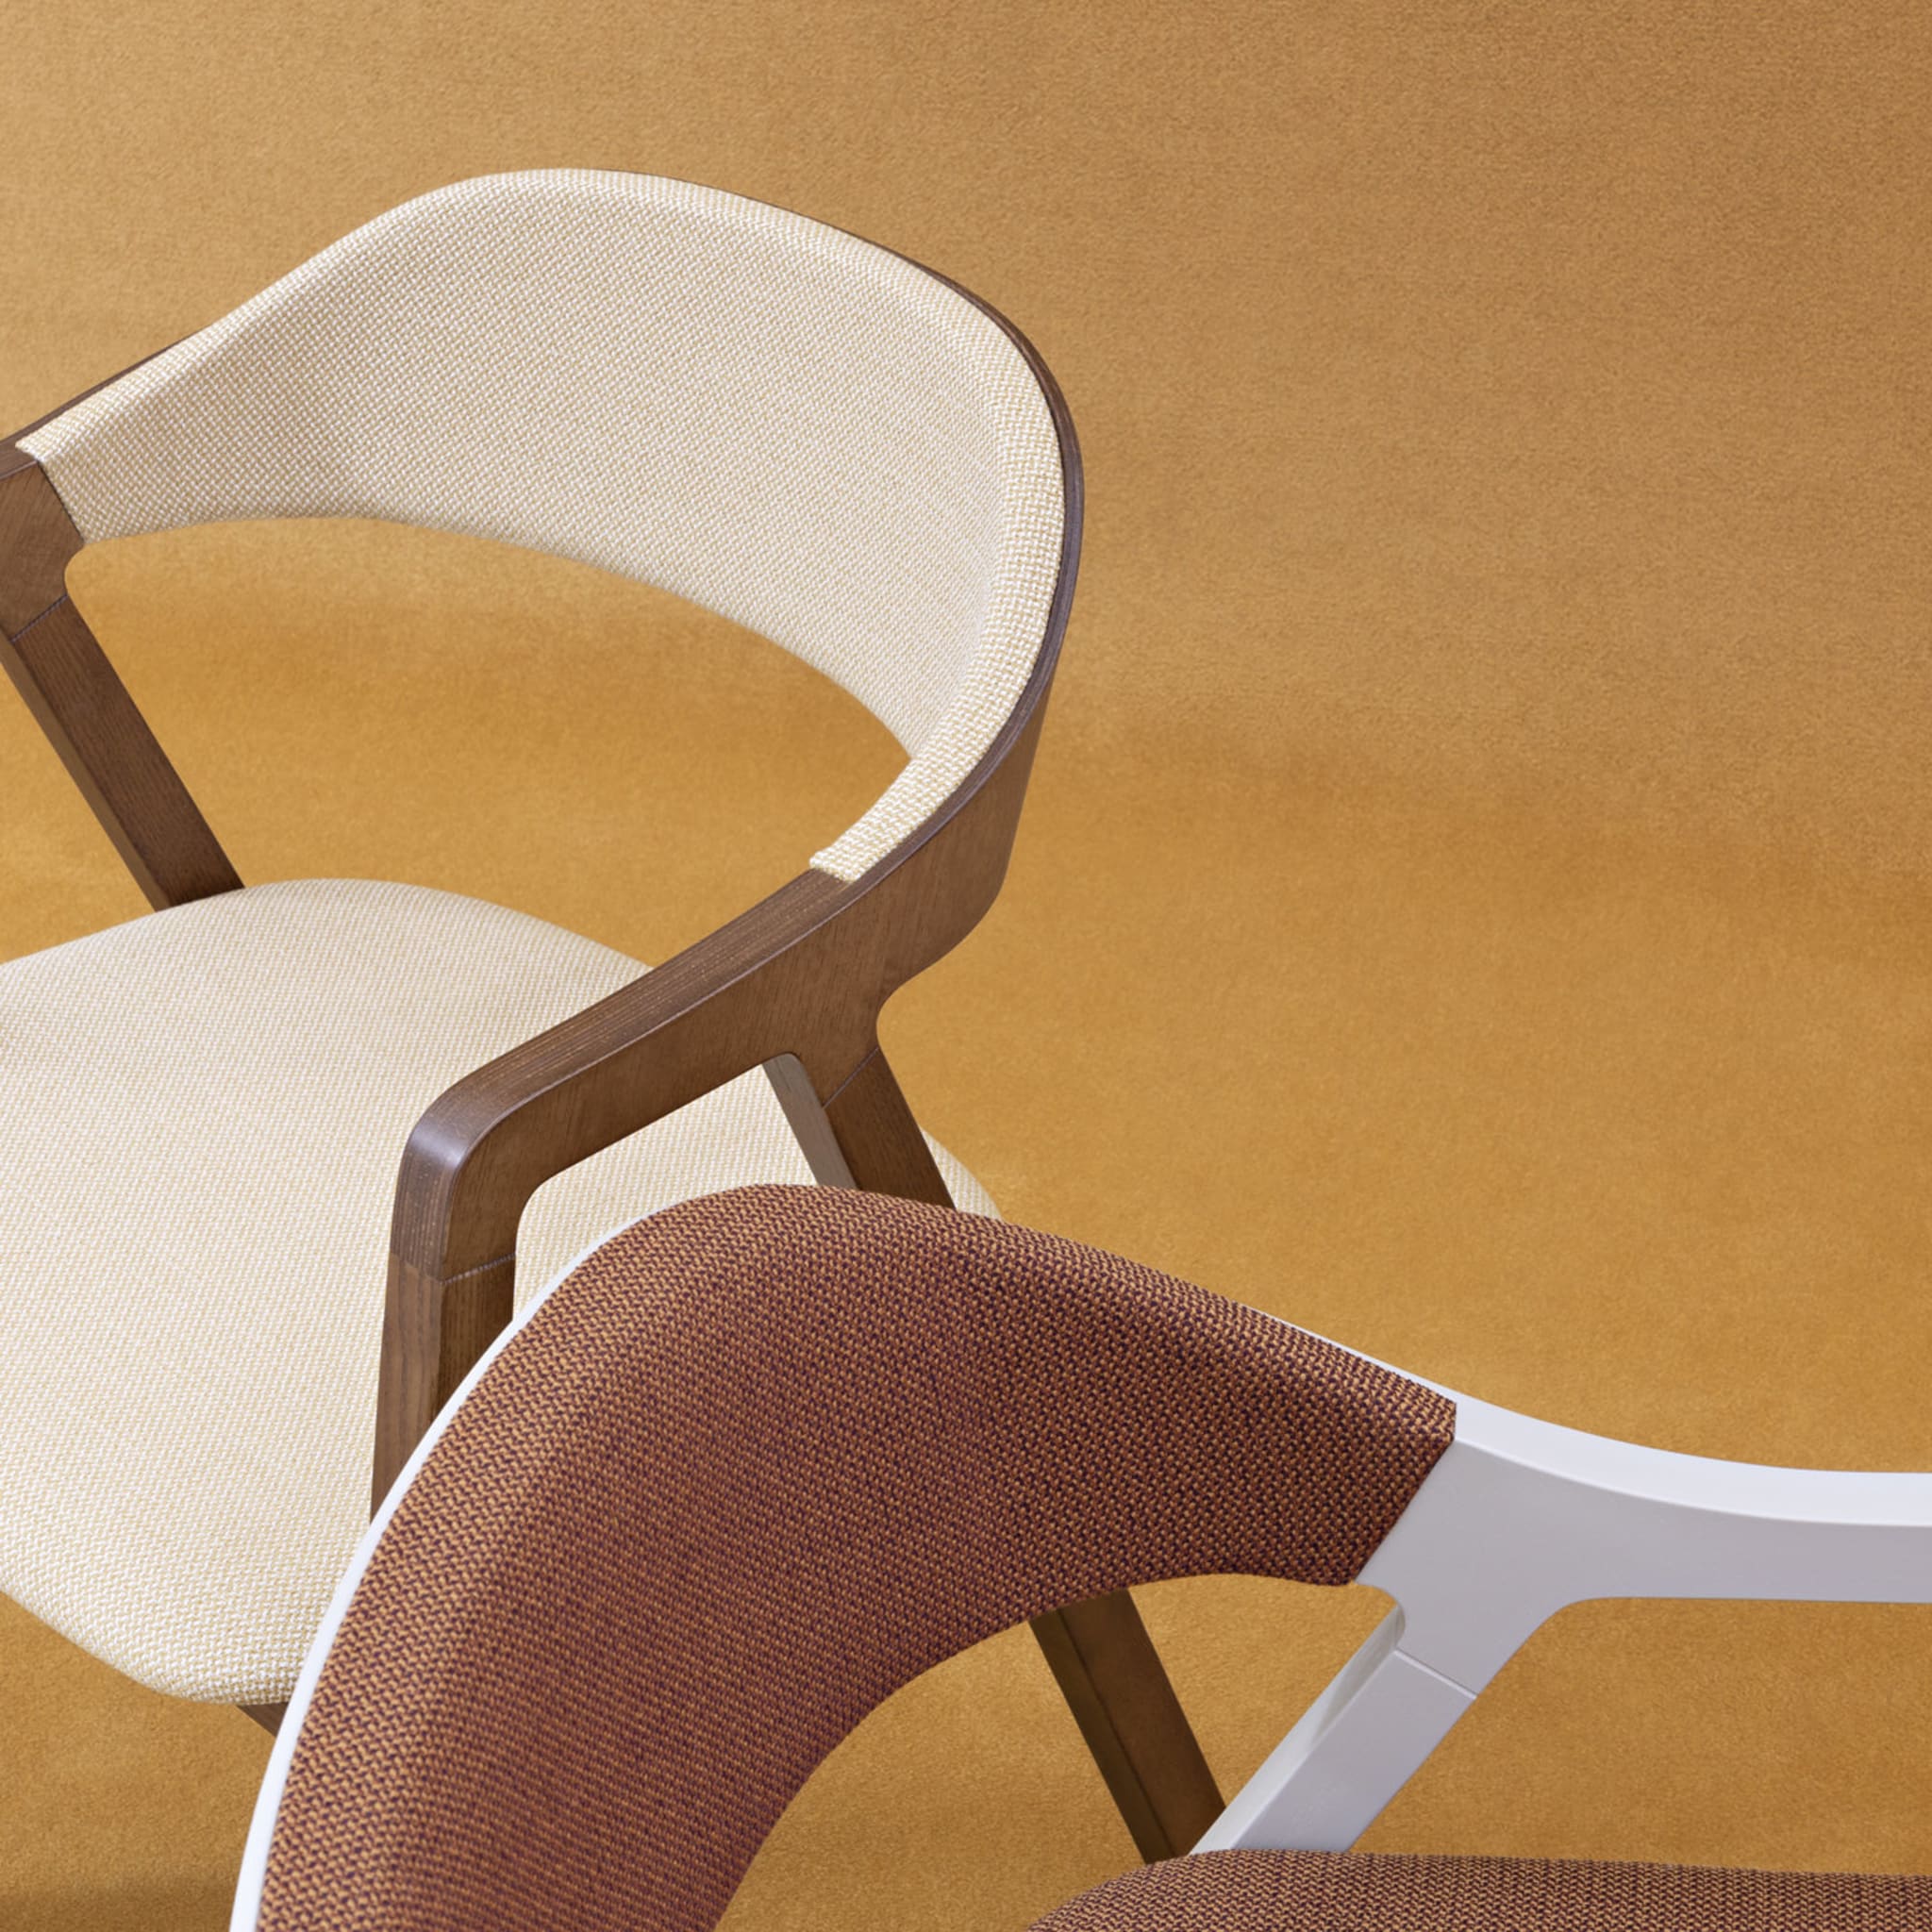 Layer Chair by Michael Geldmacher - Alternative view 1